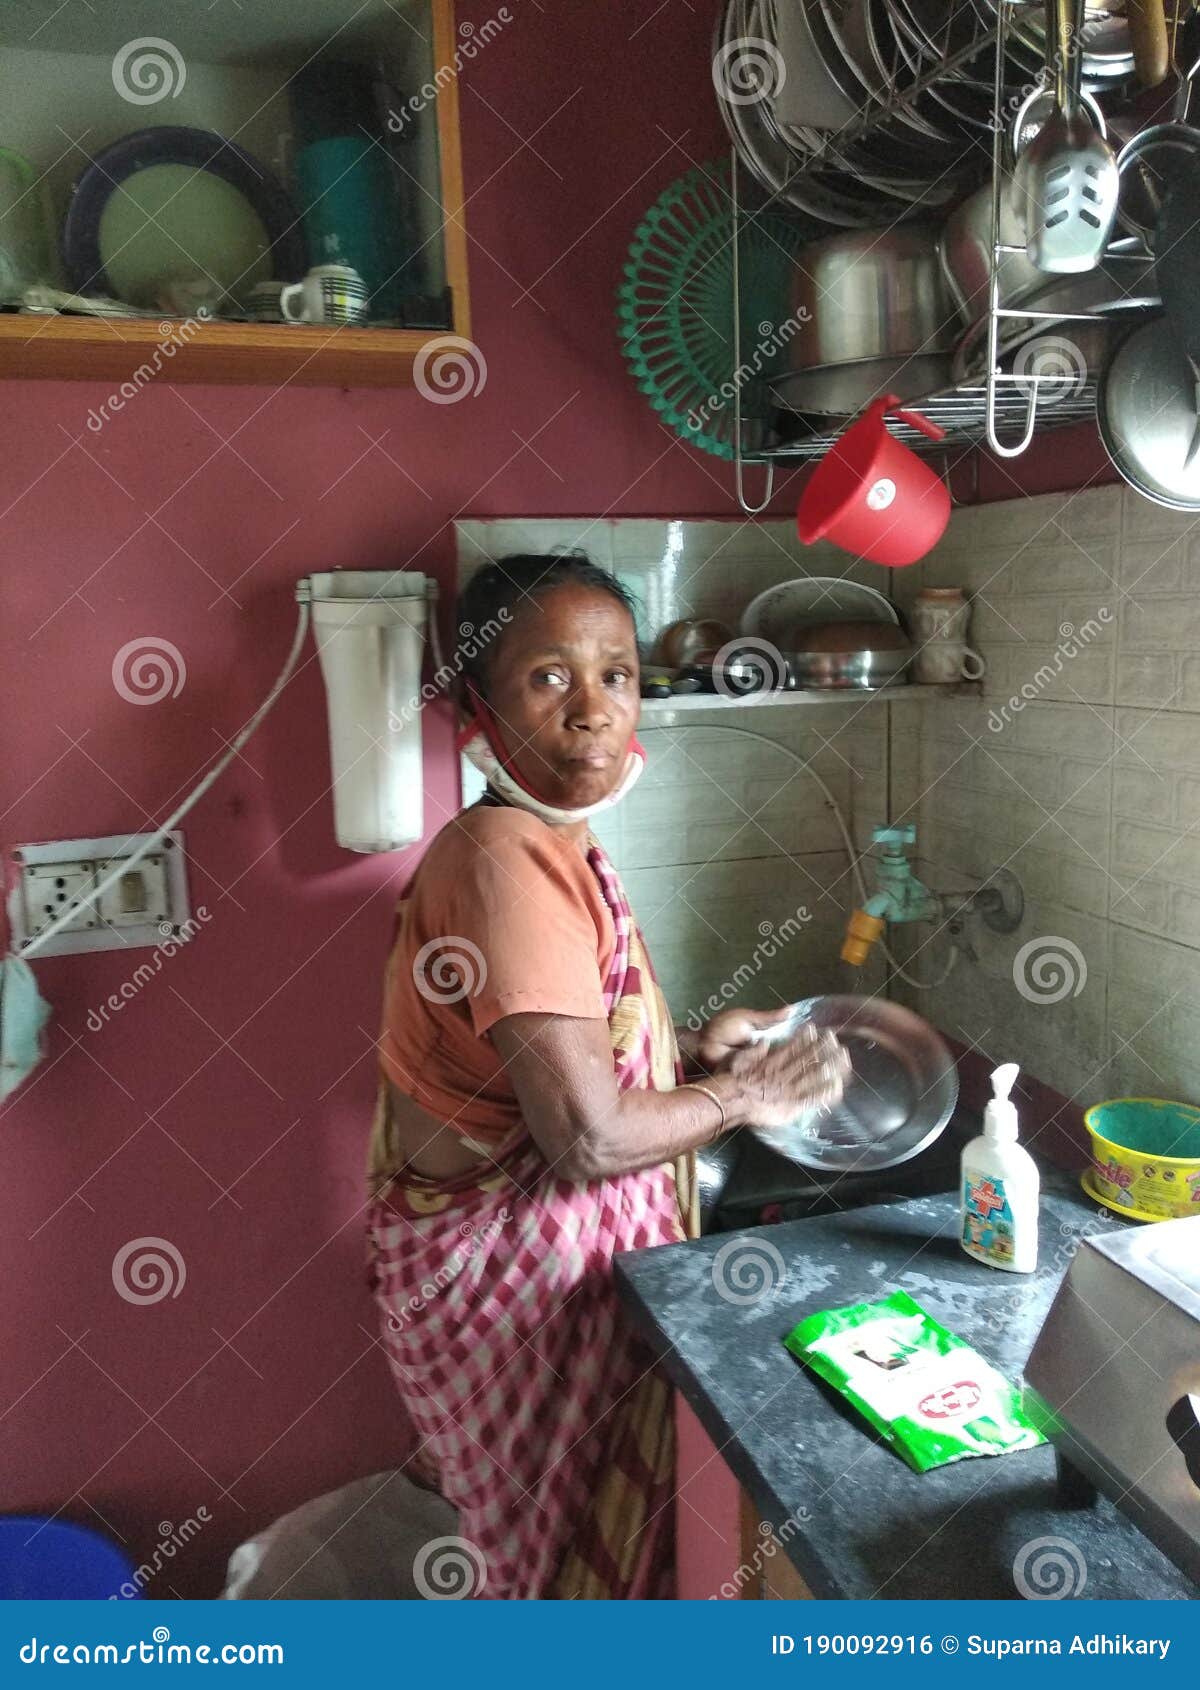 desi maid in kitchen